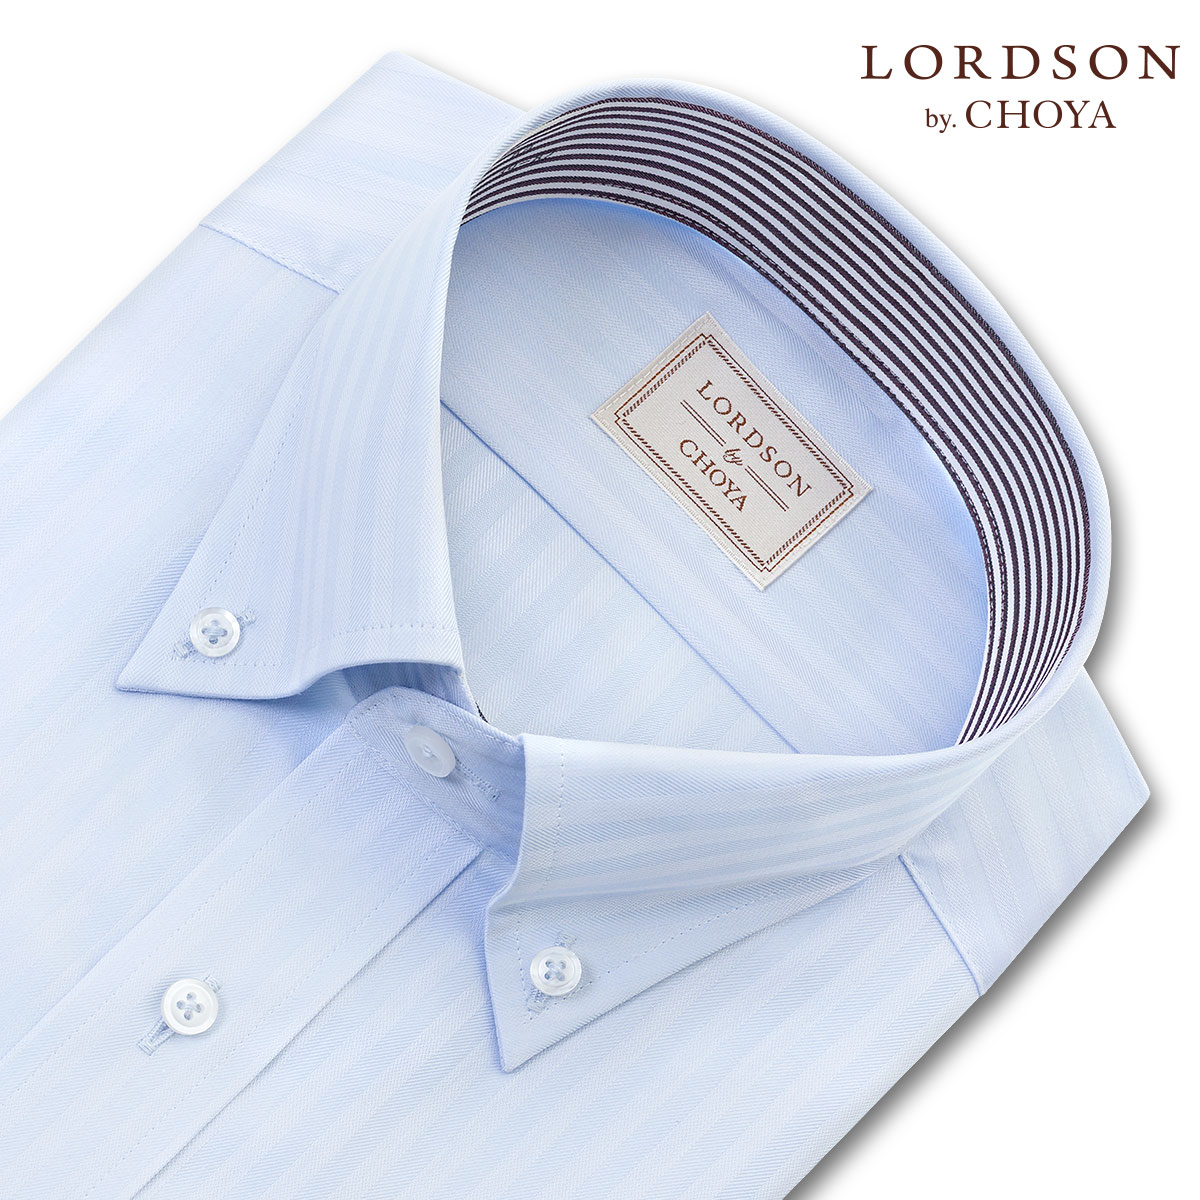 【楽天市場】LORDSON Yシャツ 長袖 ワイシャツ メンズ 形態安定 ブルードビー ストライプ柄 ボタンダウンシャツ 綿100% ブルー